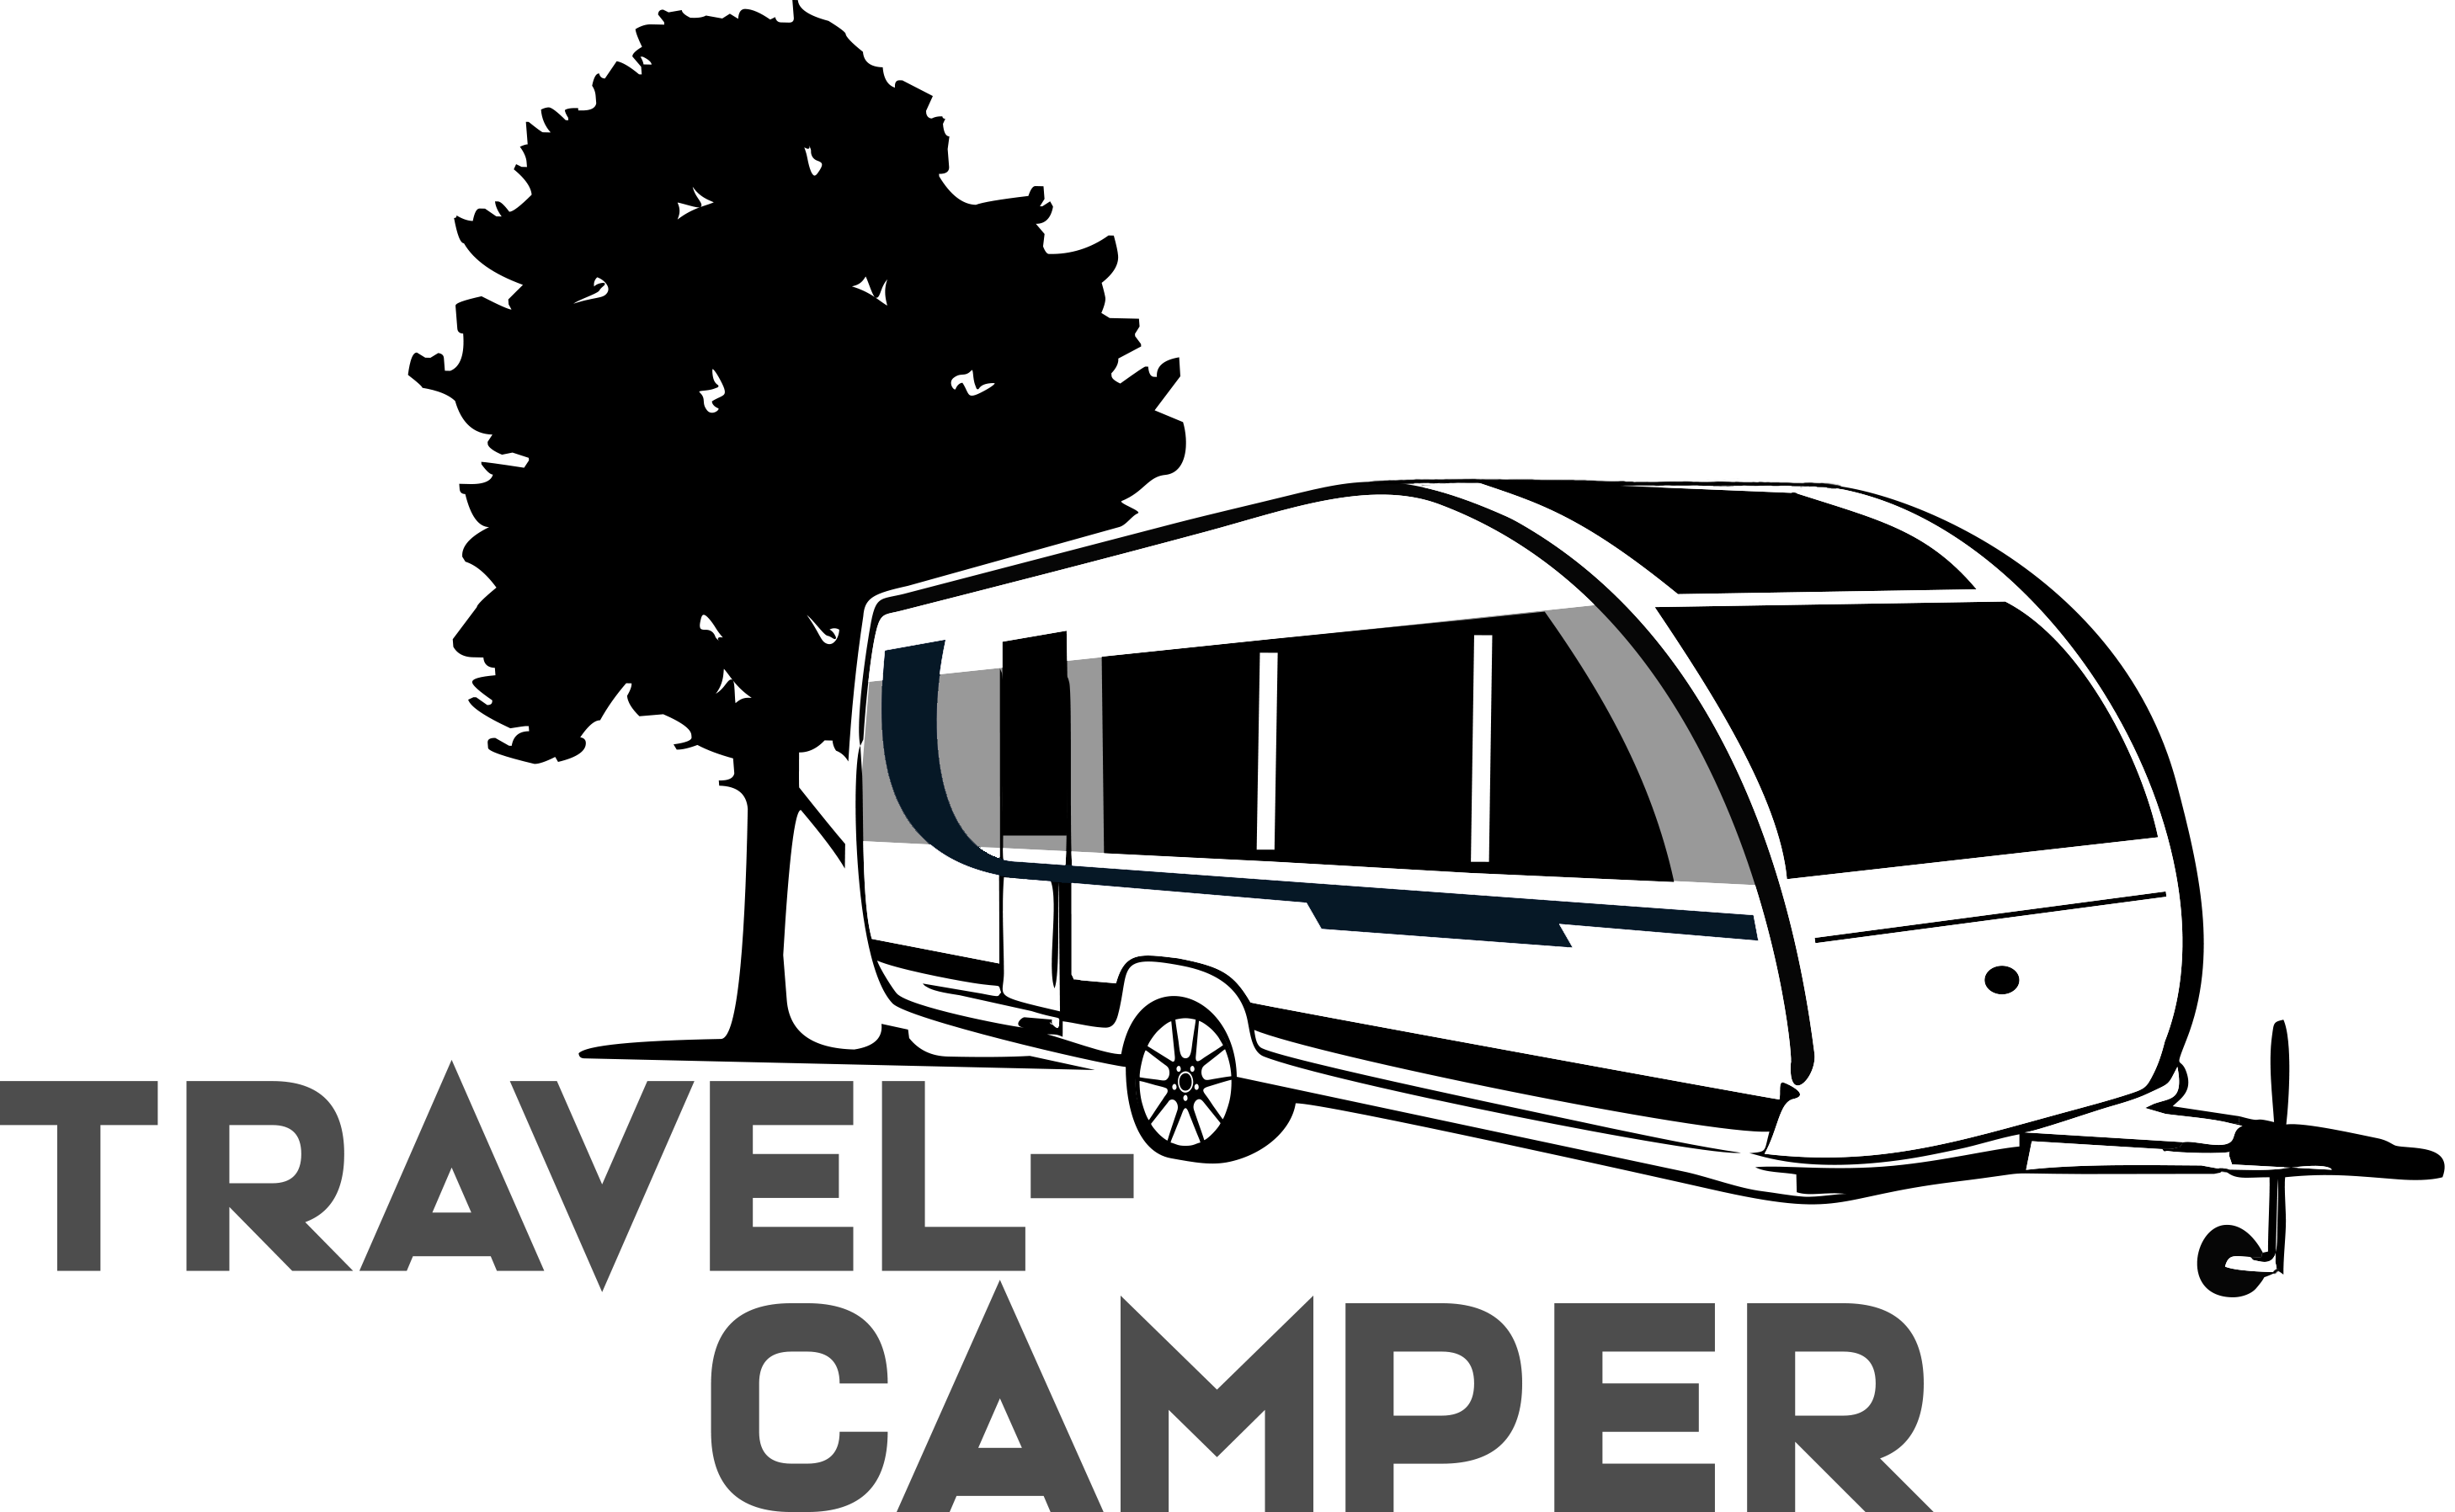 Travel Camper